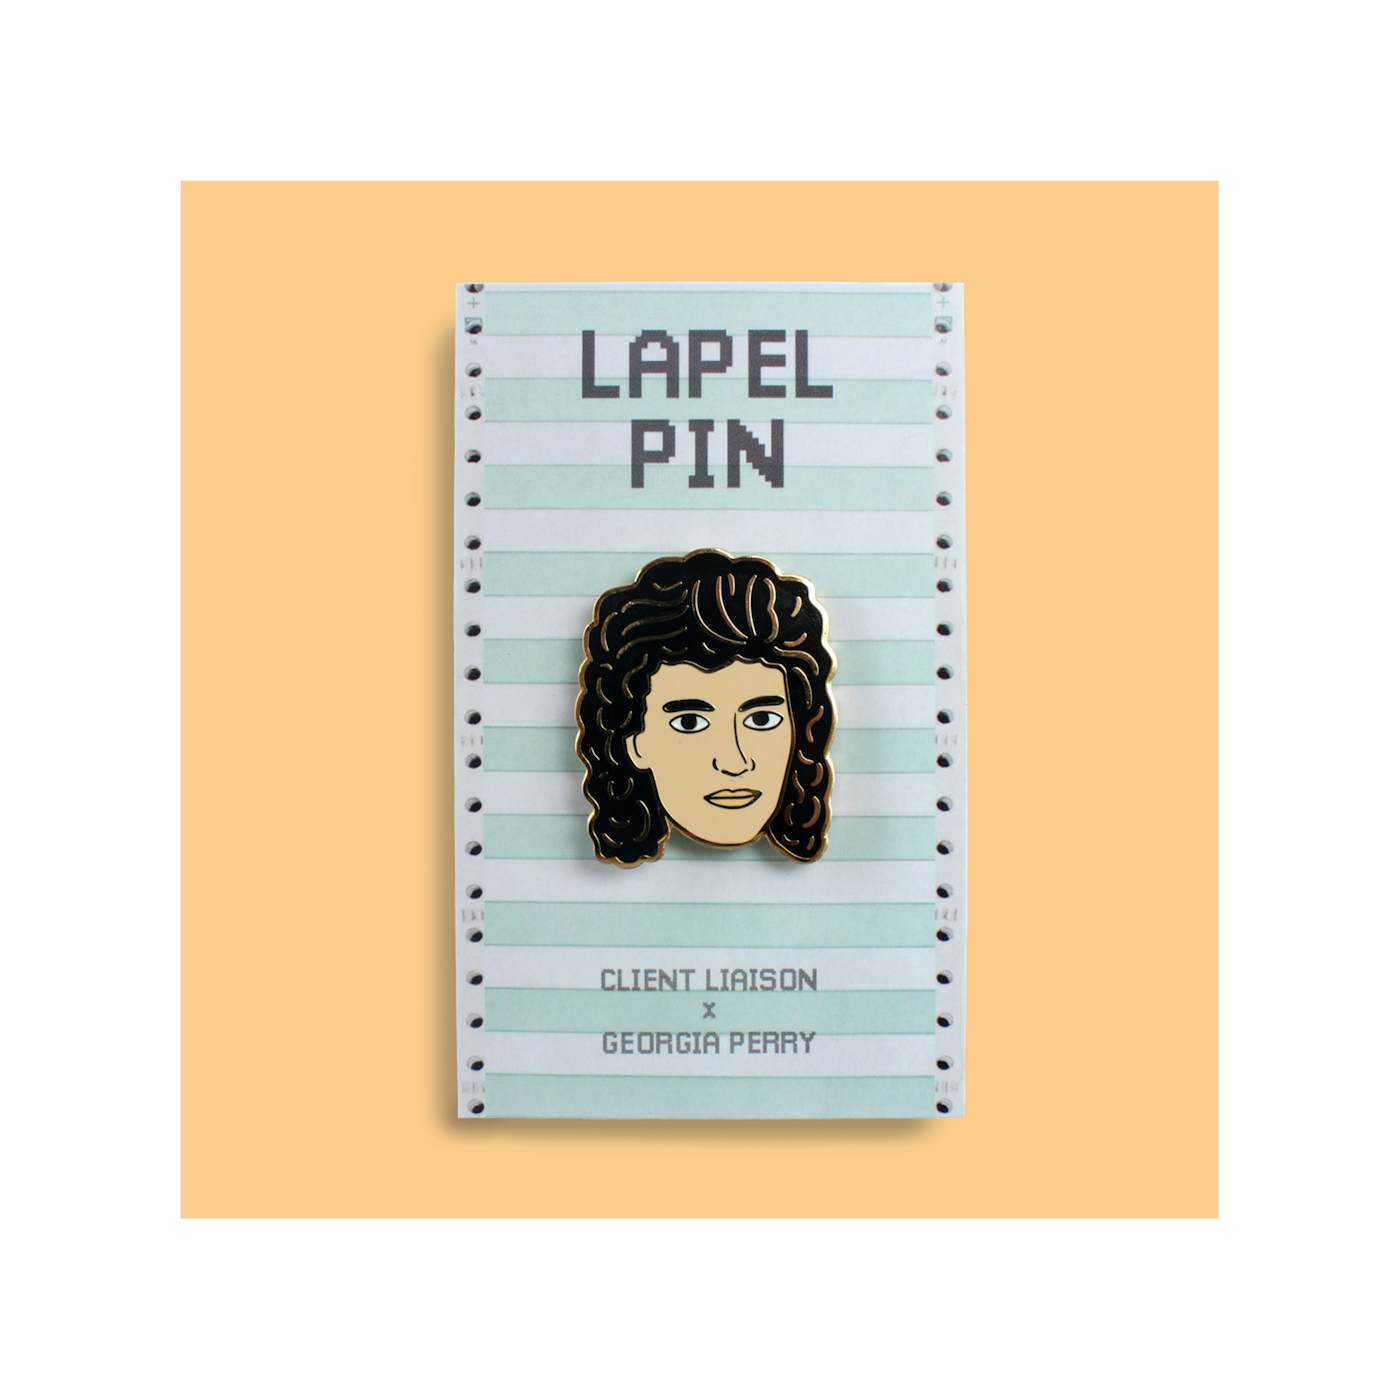 Client Liaison Monte Morgan / Lapel Pin